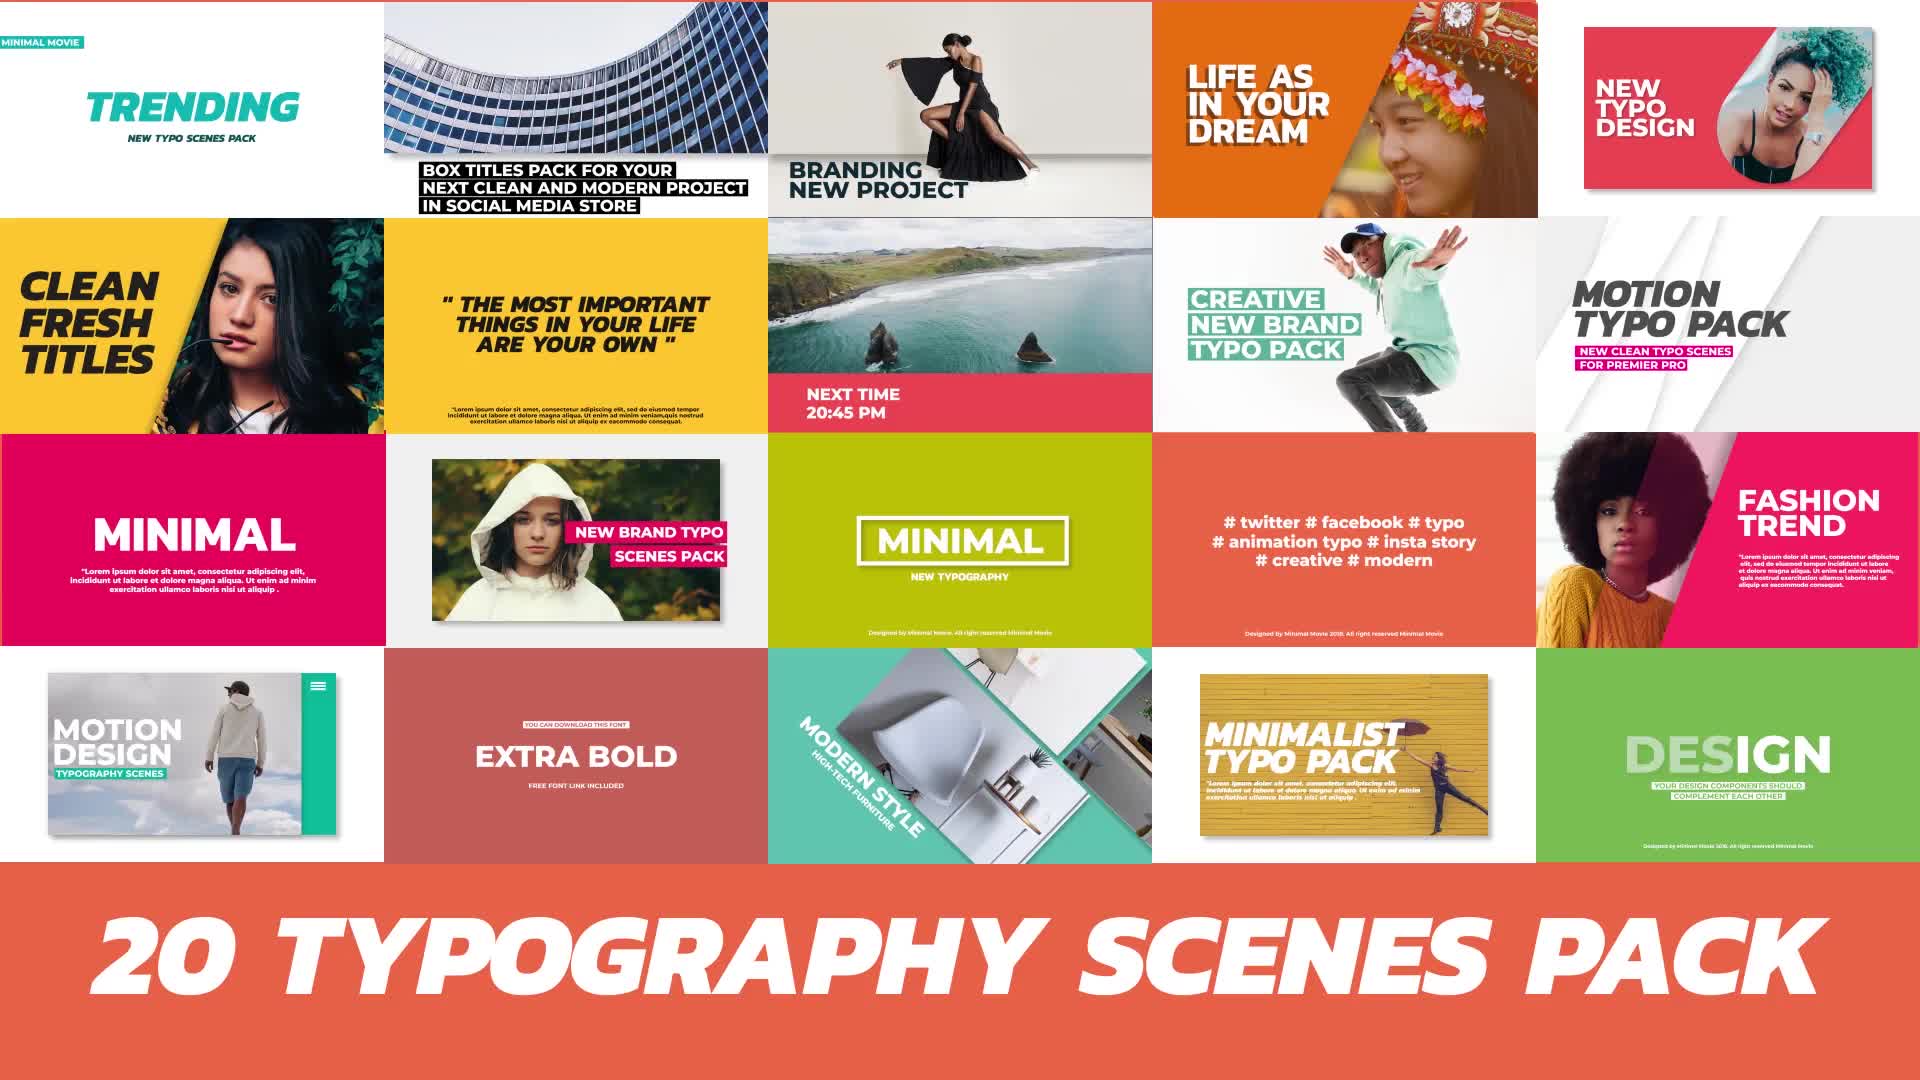 20 Trendy Typography Scenes Videohive 22271860 Premiere Pro Image 1